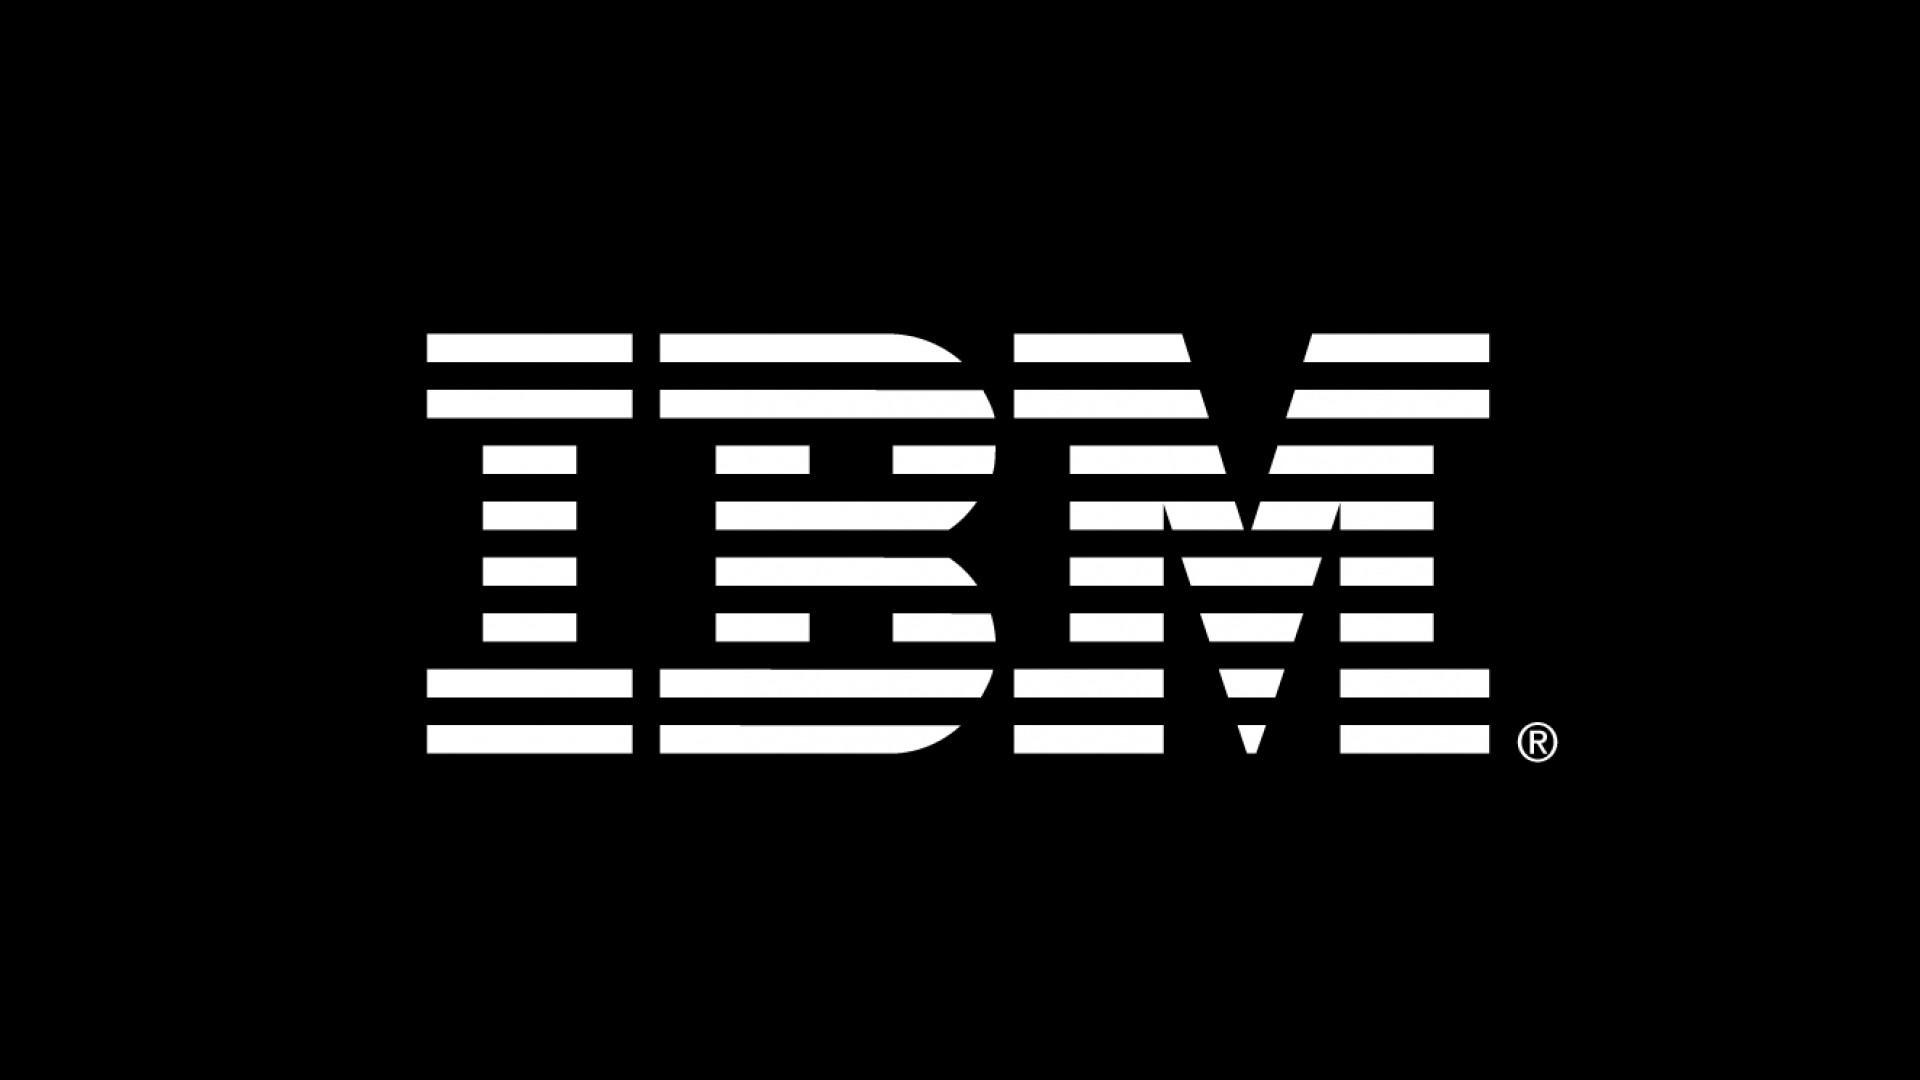 1920x1080 ... Ibm dark logo ...